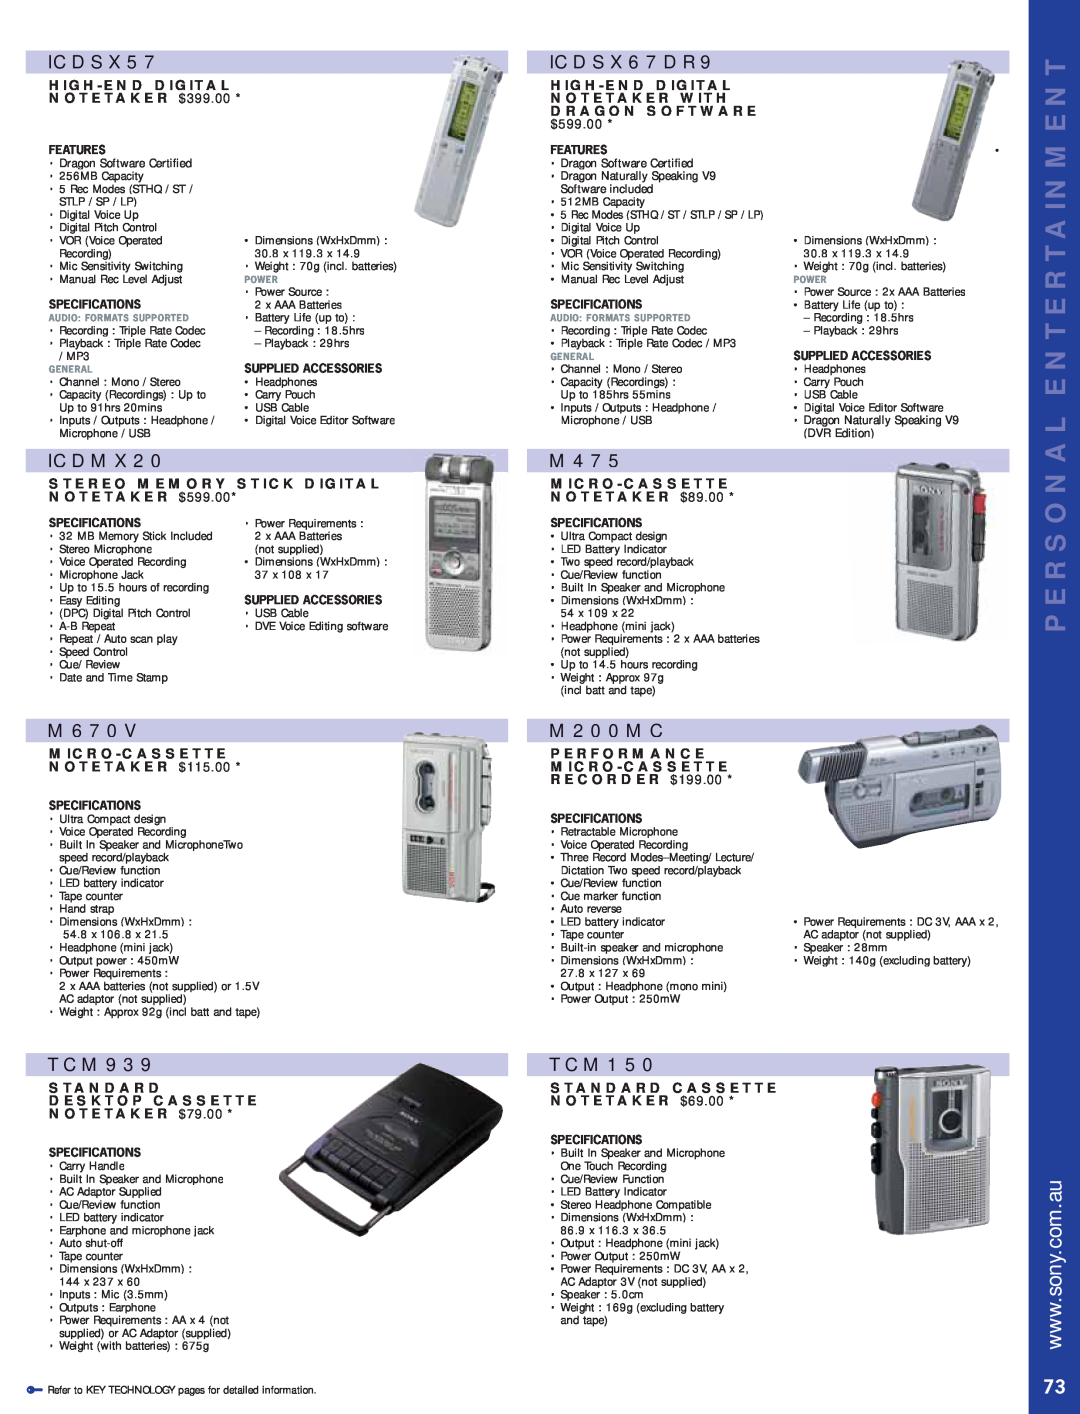 Sony Bravia LCD TV ICDSX57, ICDSX67DR9, ICDMX20, M670V, TCM939, M475, M200MC, TCM150, Personal Entertainment, $599.00 